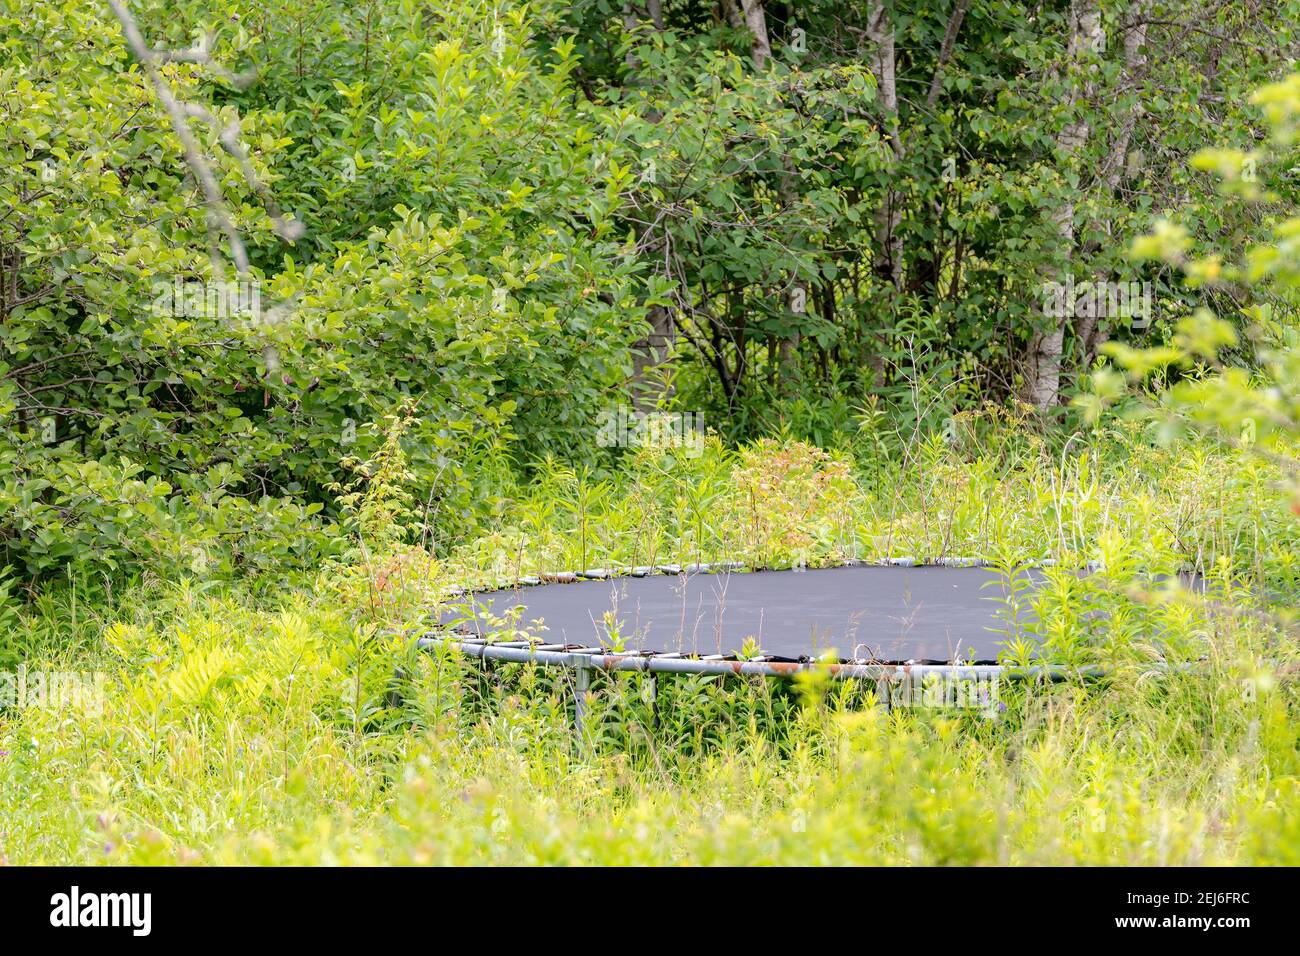 Un vieux trampoline installé dans un champ surcultivé, avec une forêt  derrière. Le cadre rond présente des taches de rouille. Partie du trampoline  cachée par des buissons Photo Stock - Alamy